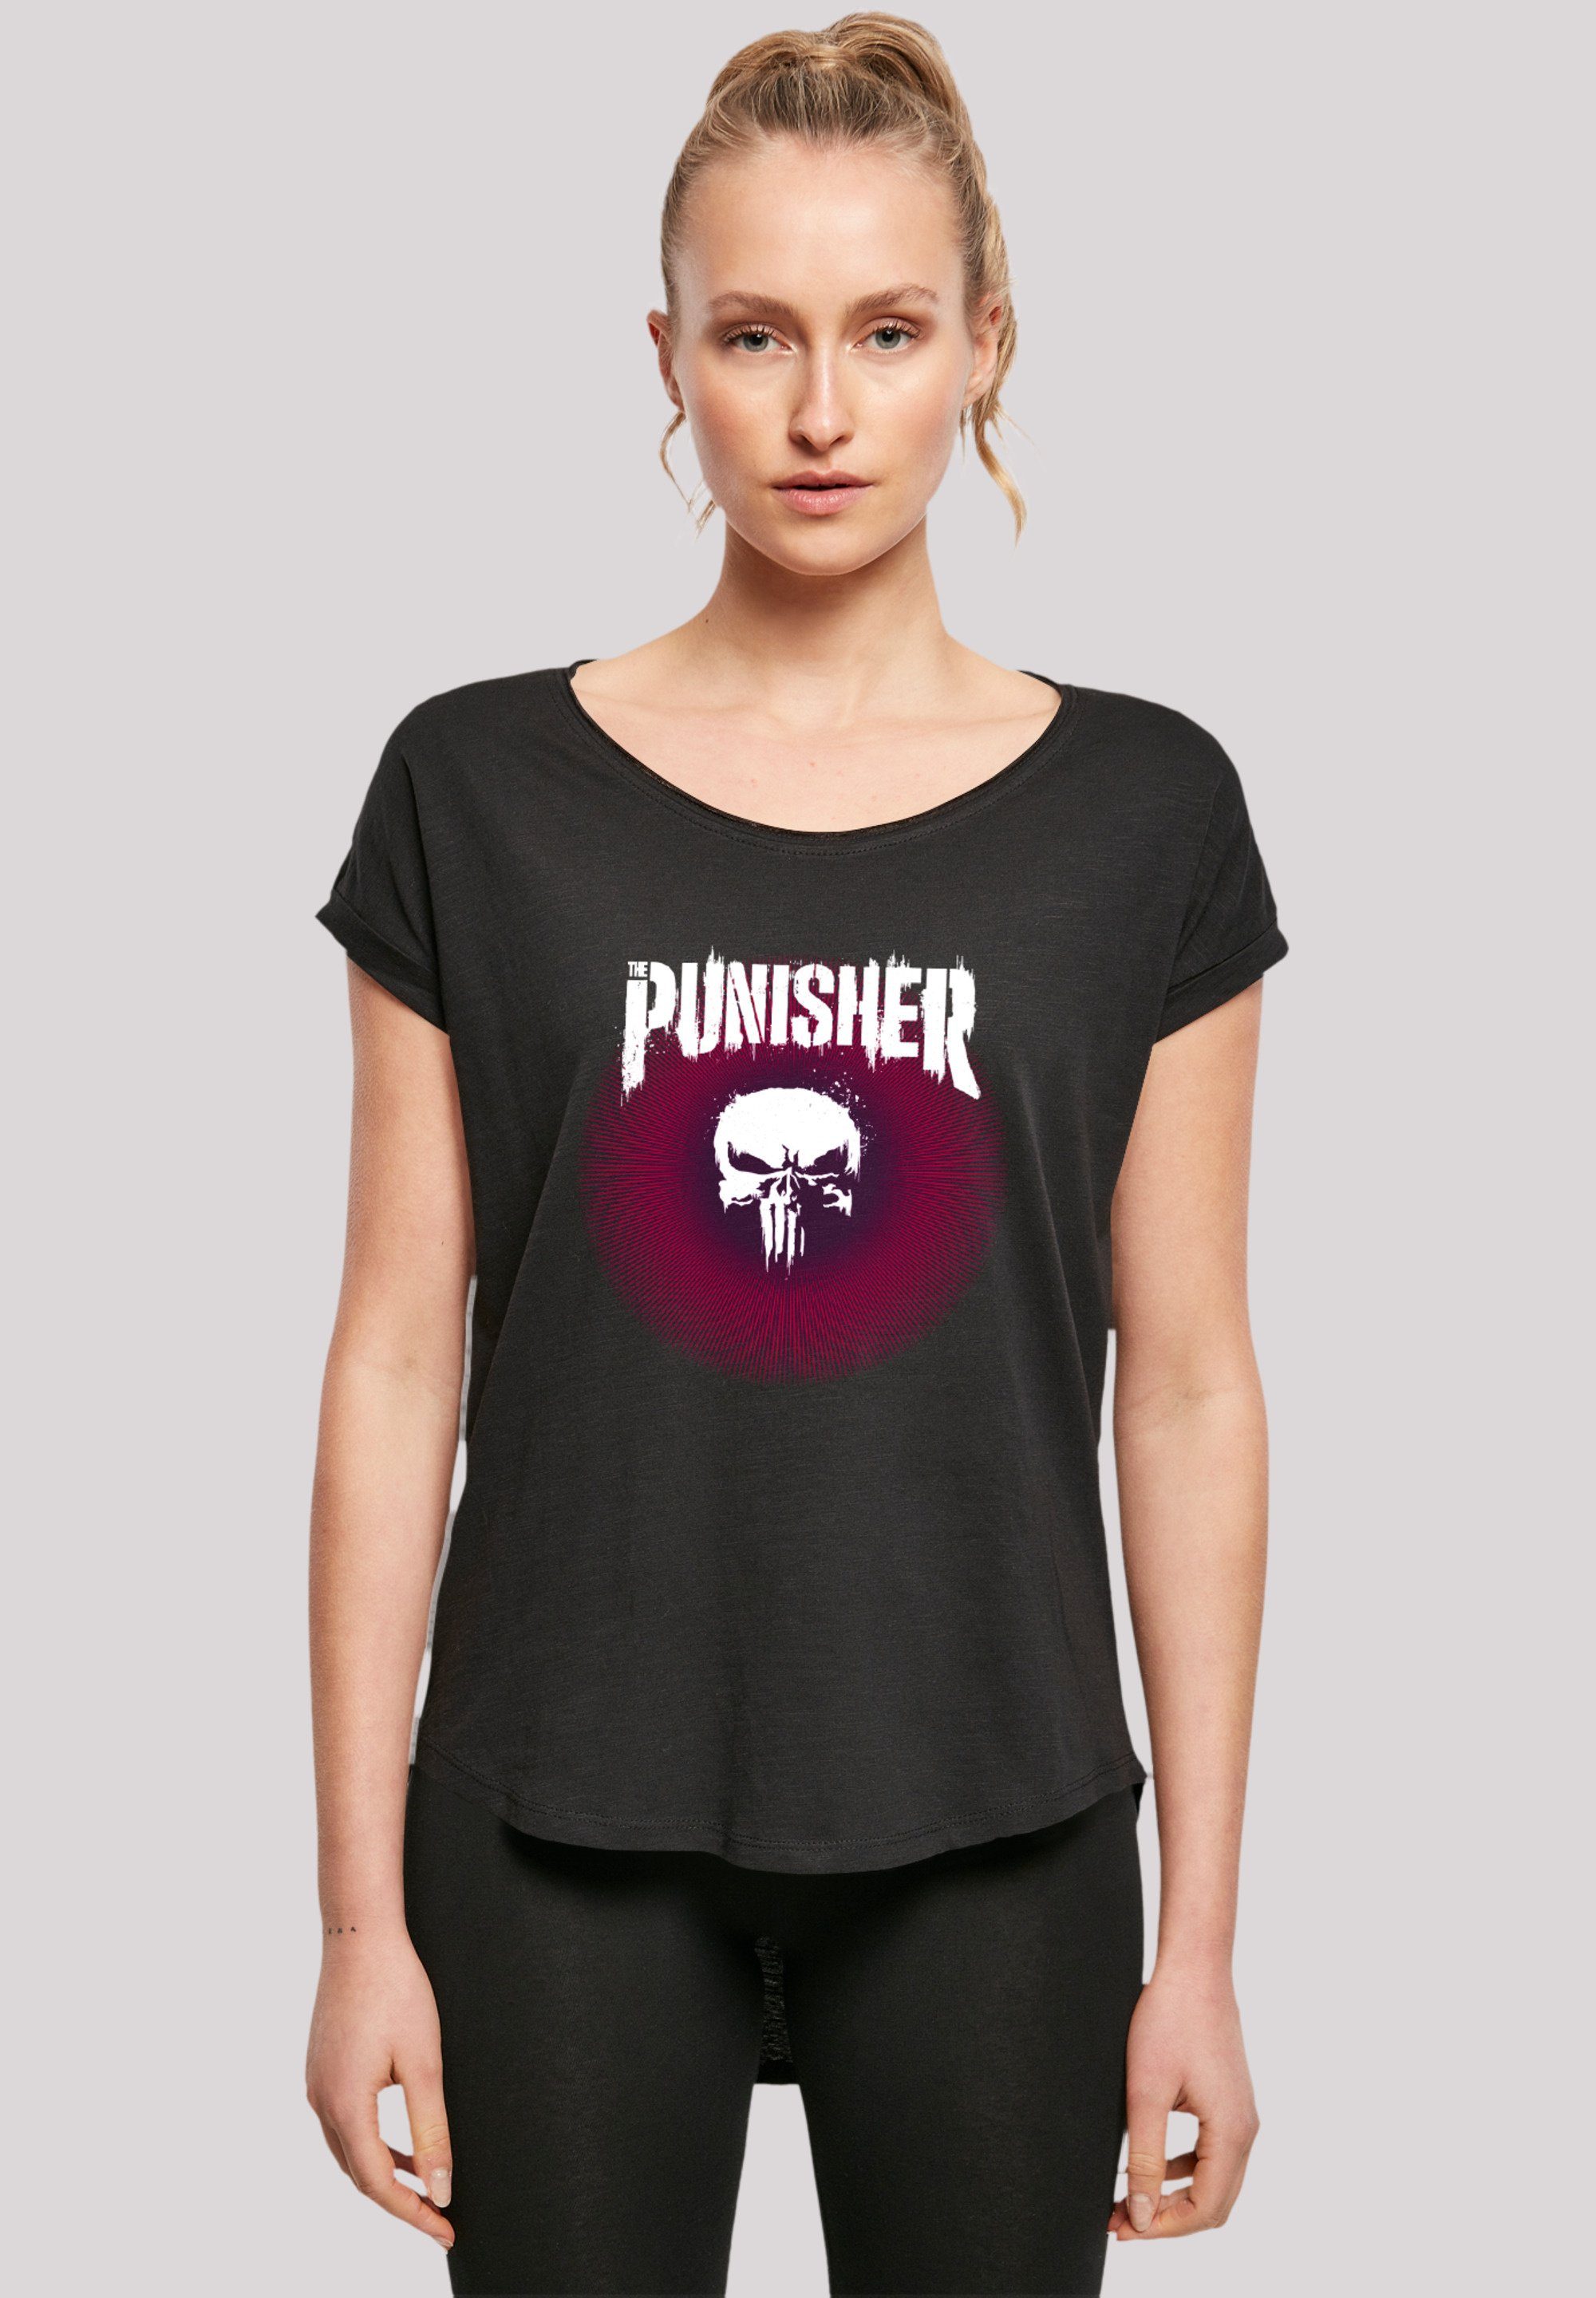 F4NT4STIC T-Shirt Marvel Punisher Warface Psychedelic Sehr Baumwollstoff mit hohem Premium weicher Qualität, Tragekomfort